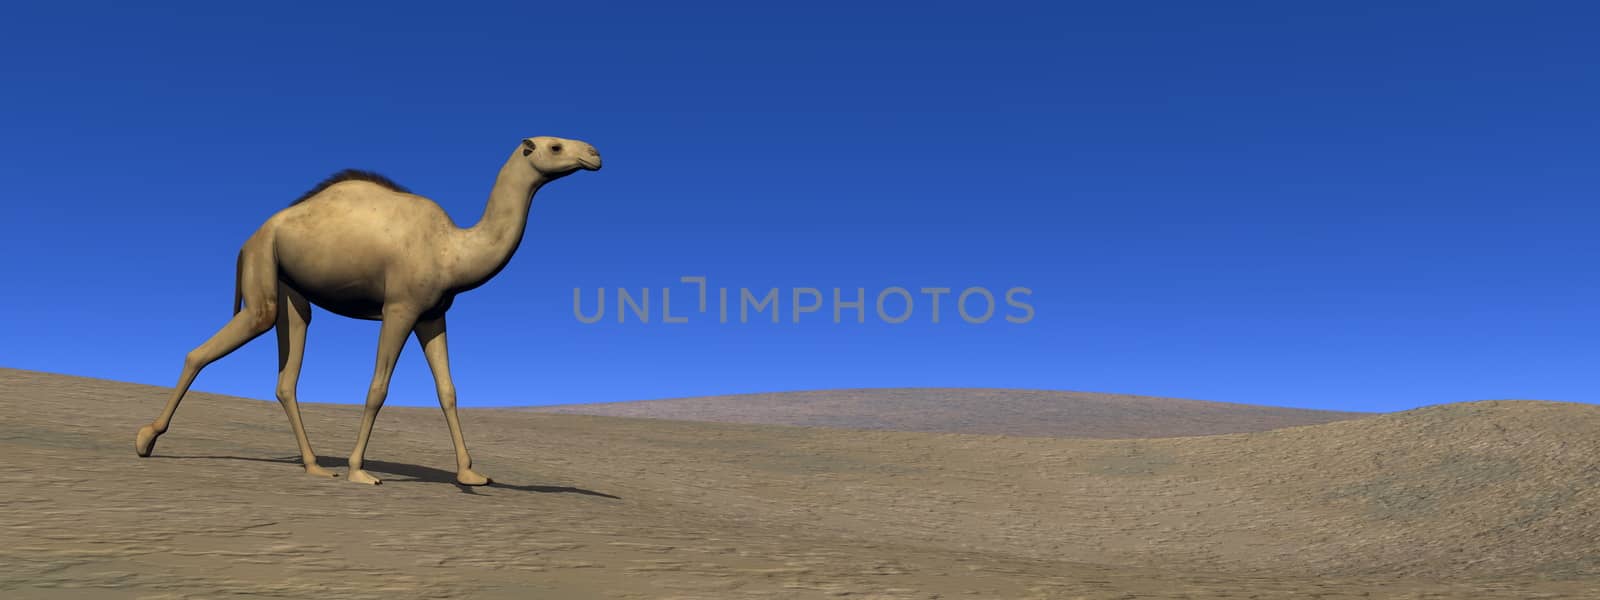 Camel walking upon a sand dune - 3D render